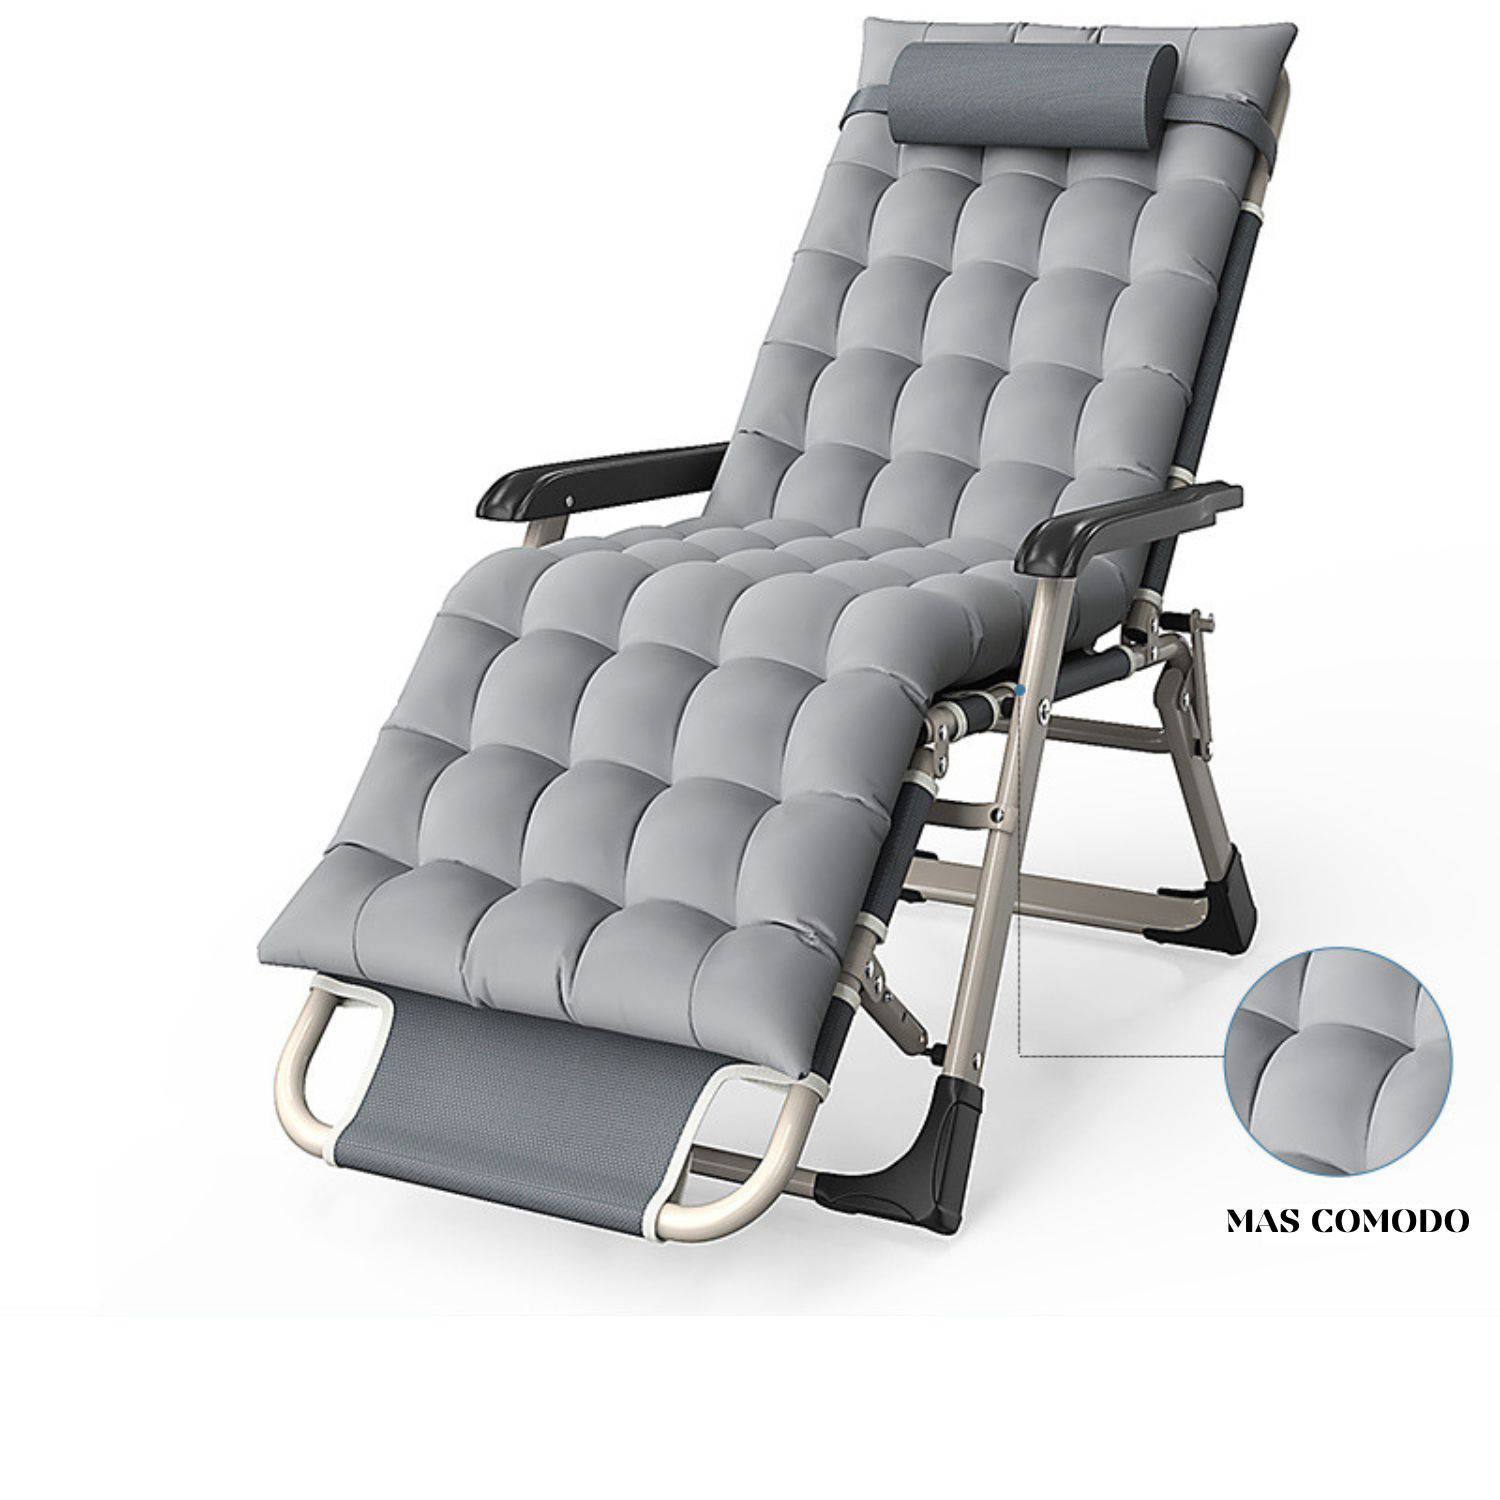 Empresa y proveedores de sillas plegables Lounge con descuento - Productos  Precio directo